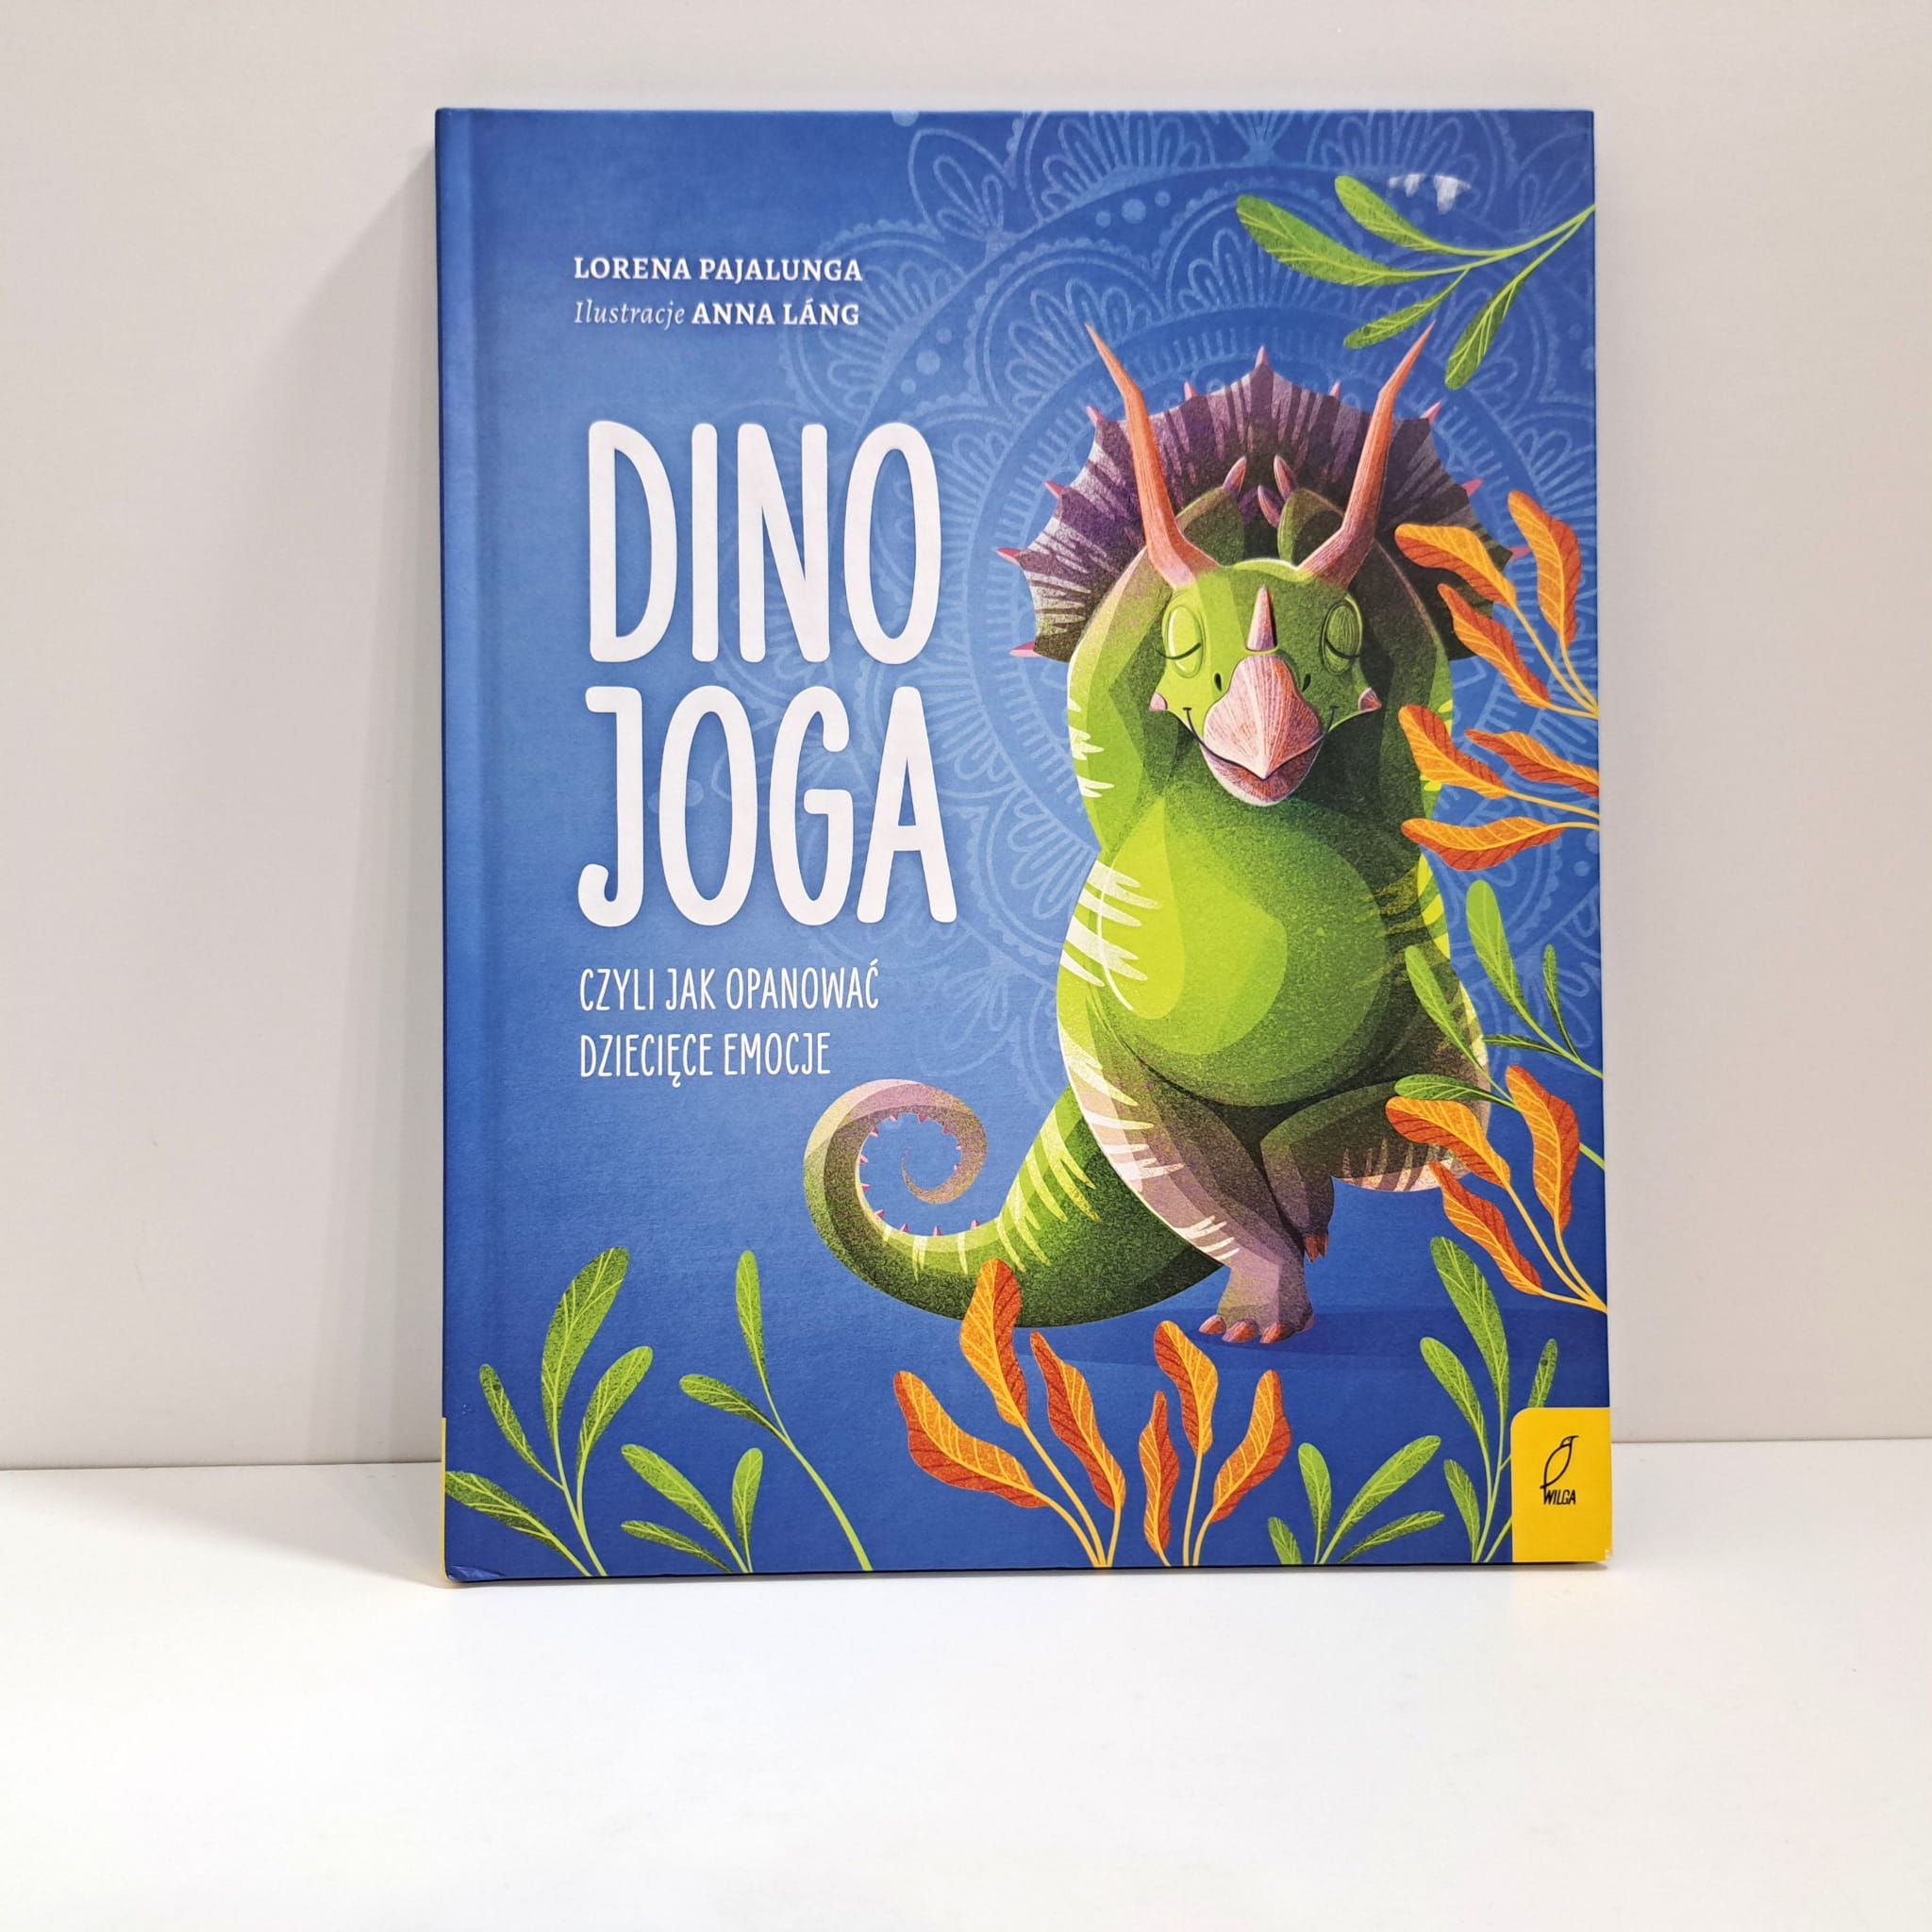 Dino joga, czyli jak opanować dziecięce emocje